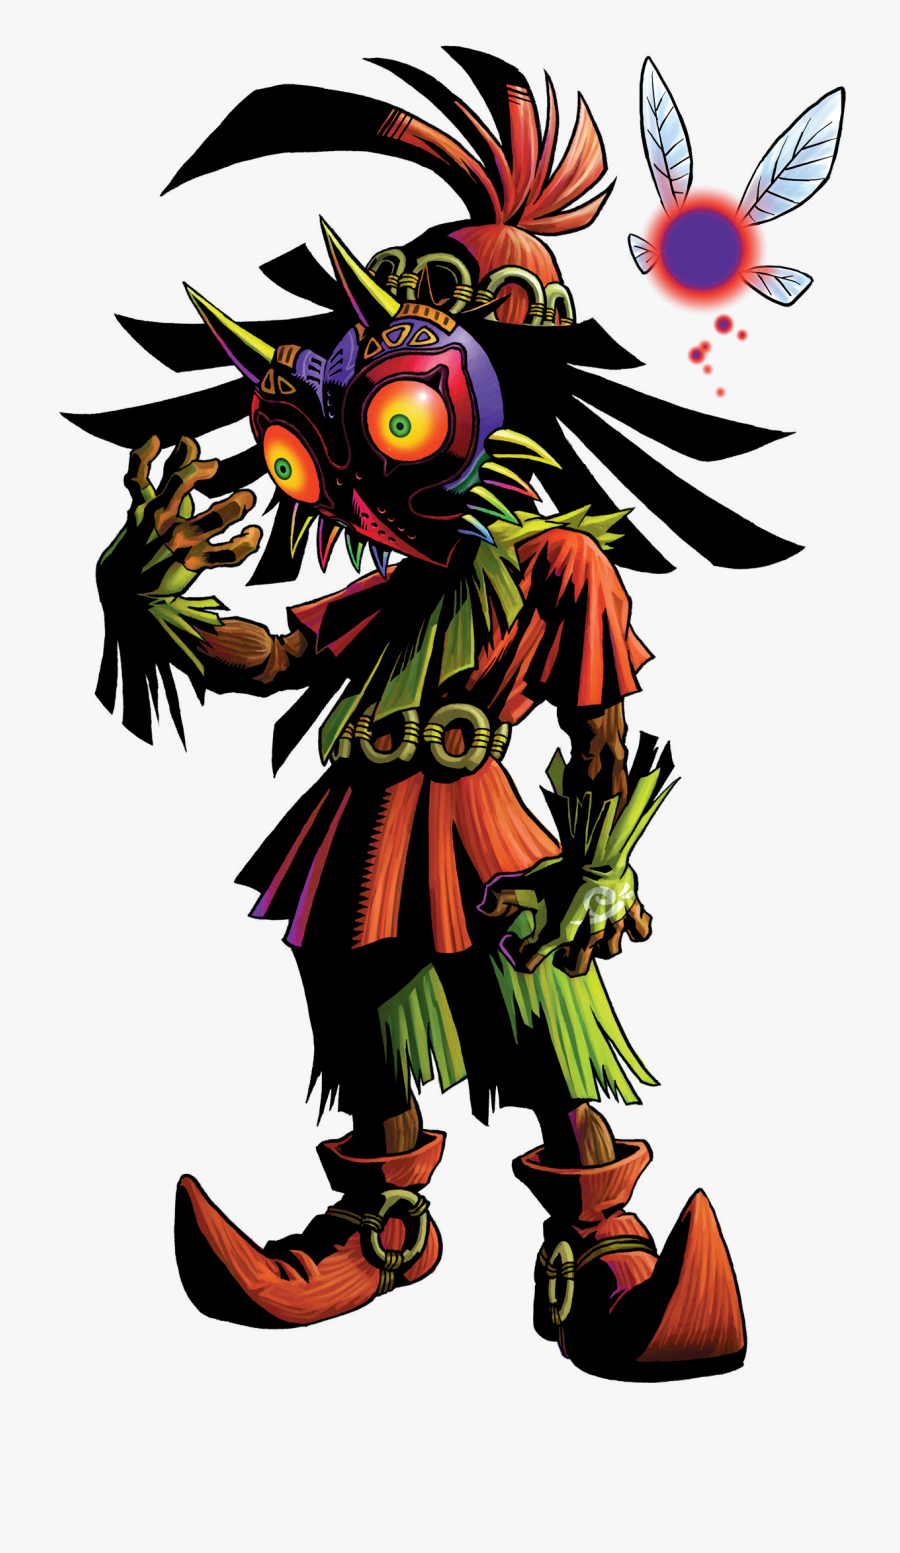 Legend Of Zelda Majora"s Mask Majora - Majora's Mask Skull Kid, Transparent Clipart